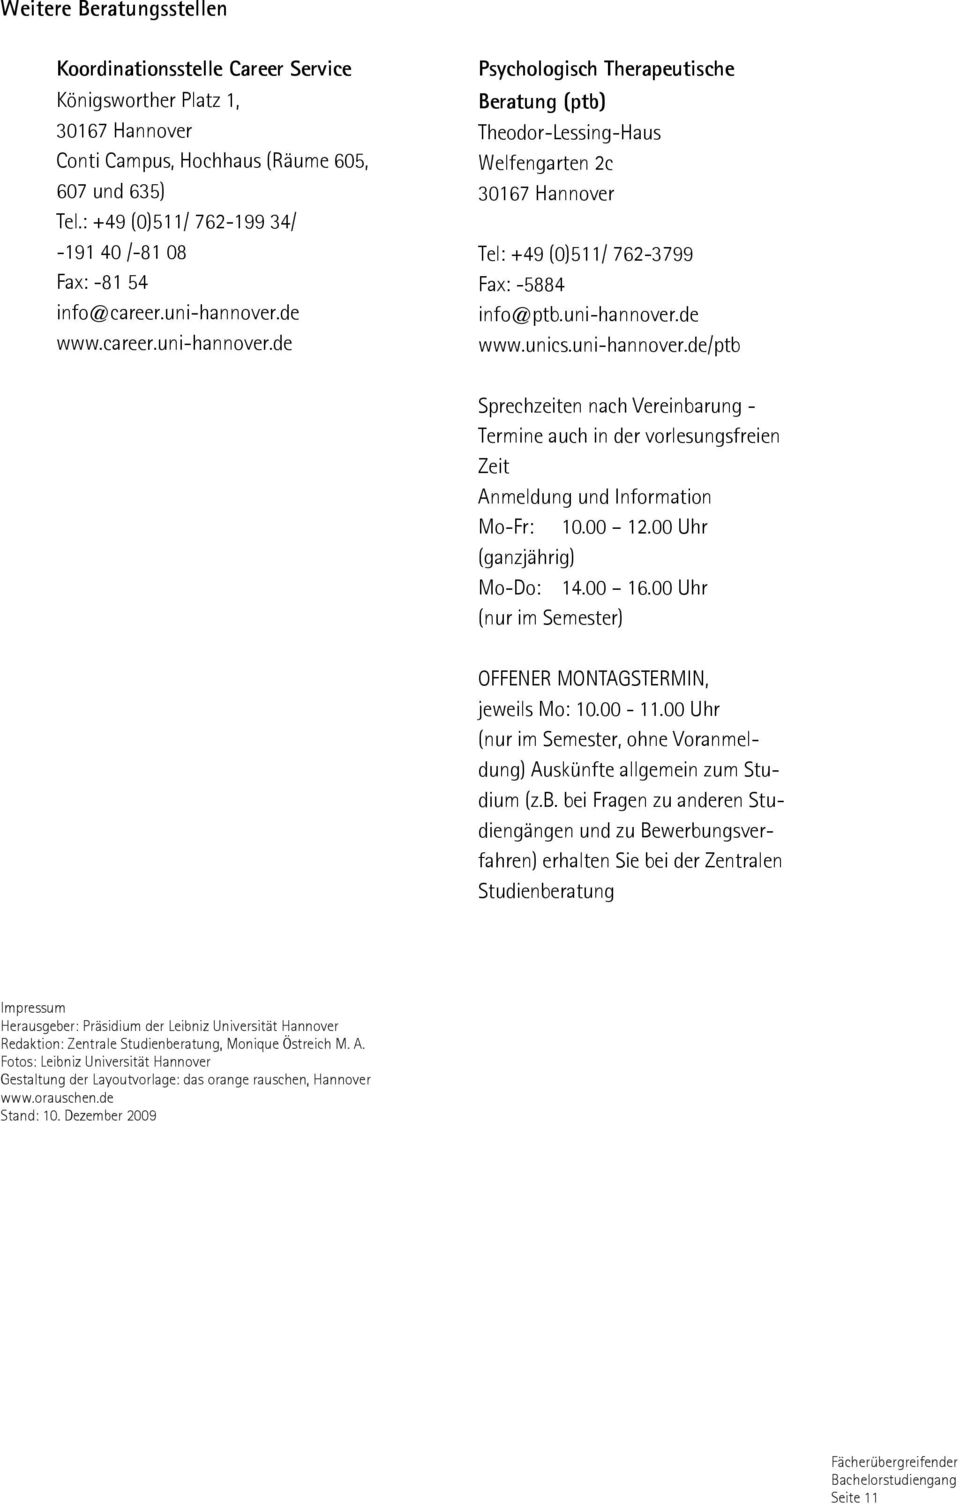 de www.career.uni-hannover.de Psychologisch Therapeutische Beratung (ptb) Theodor-Lessing-Haus Welfengarten 2c Tel: +49 (0)511/ 762-3799 Fax: -5884 info@ptb.uni-hannover.de www.unics.uni-hannover.de/ptb Sprechzeiten nach Vereinbarung - Termine auch in der vorlesungsfreien Zeit Anmeldung und Information Mo-Fr: 10.